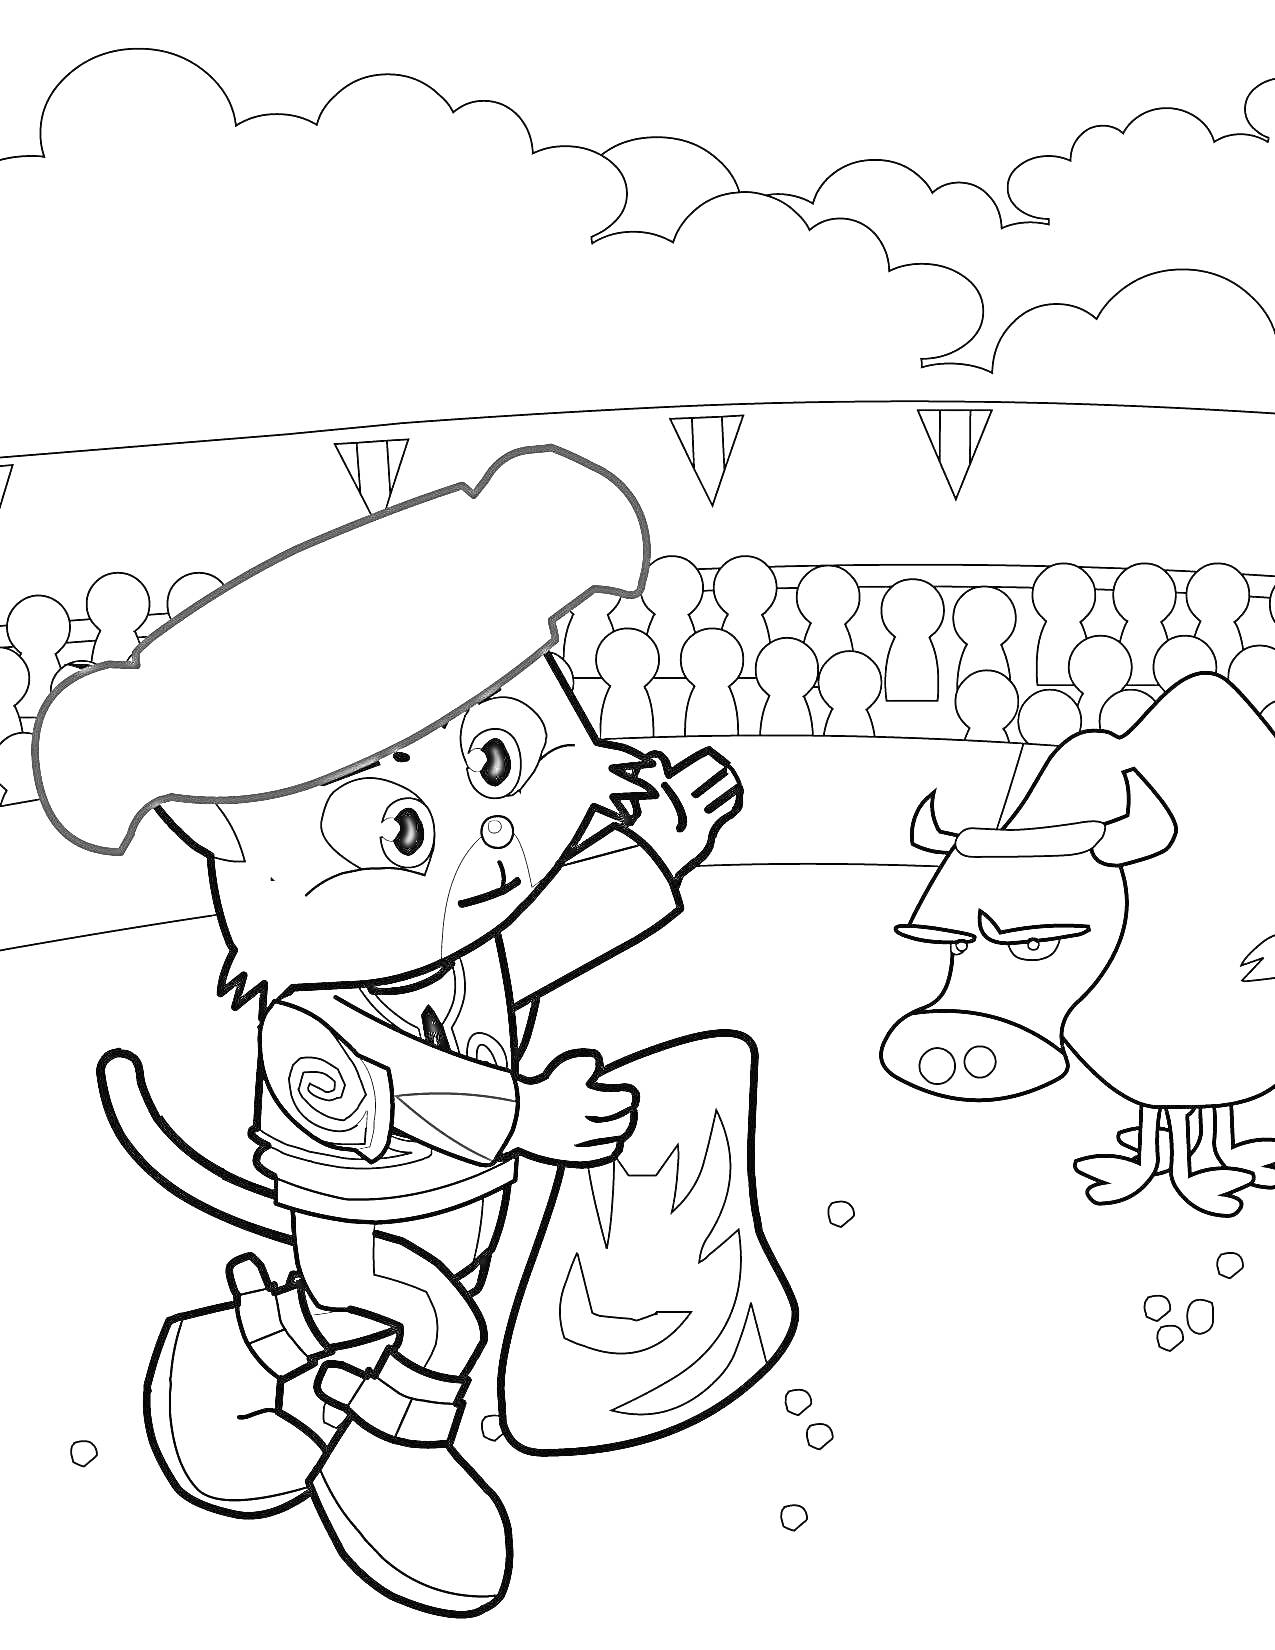 Раскраска Кот-тореадор с плащом и бык на испанской корриде